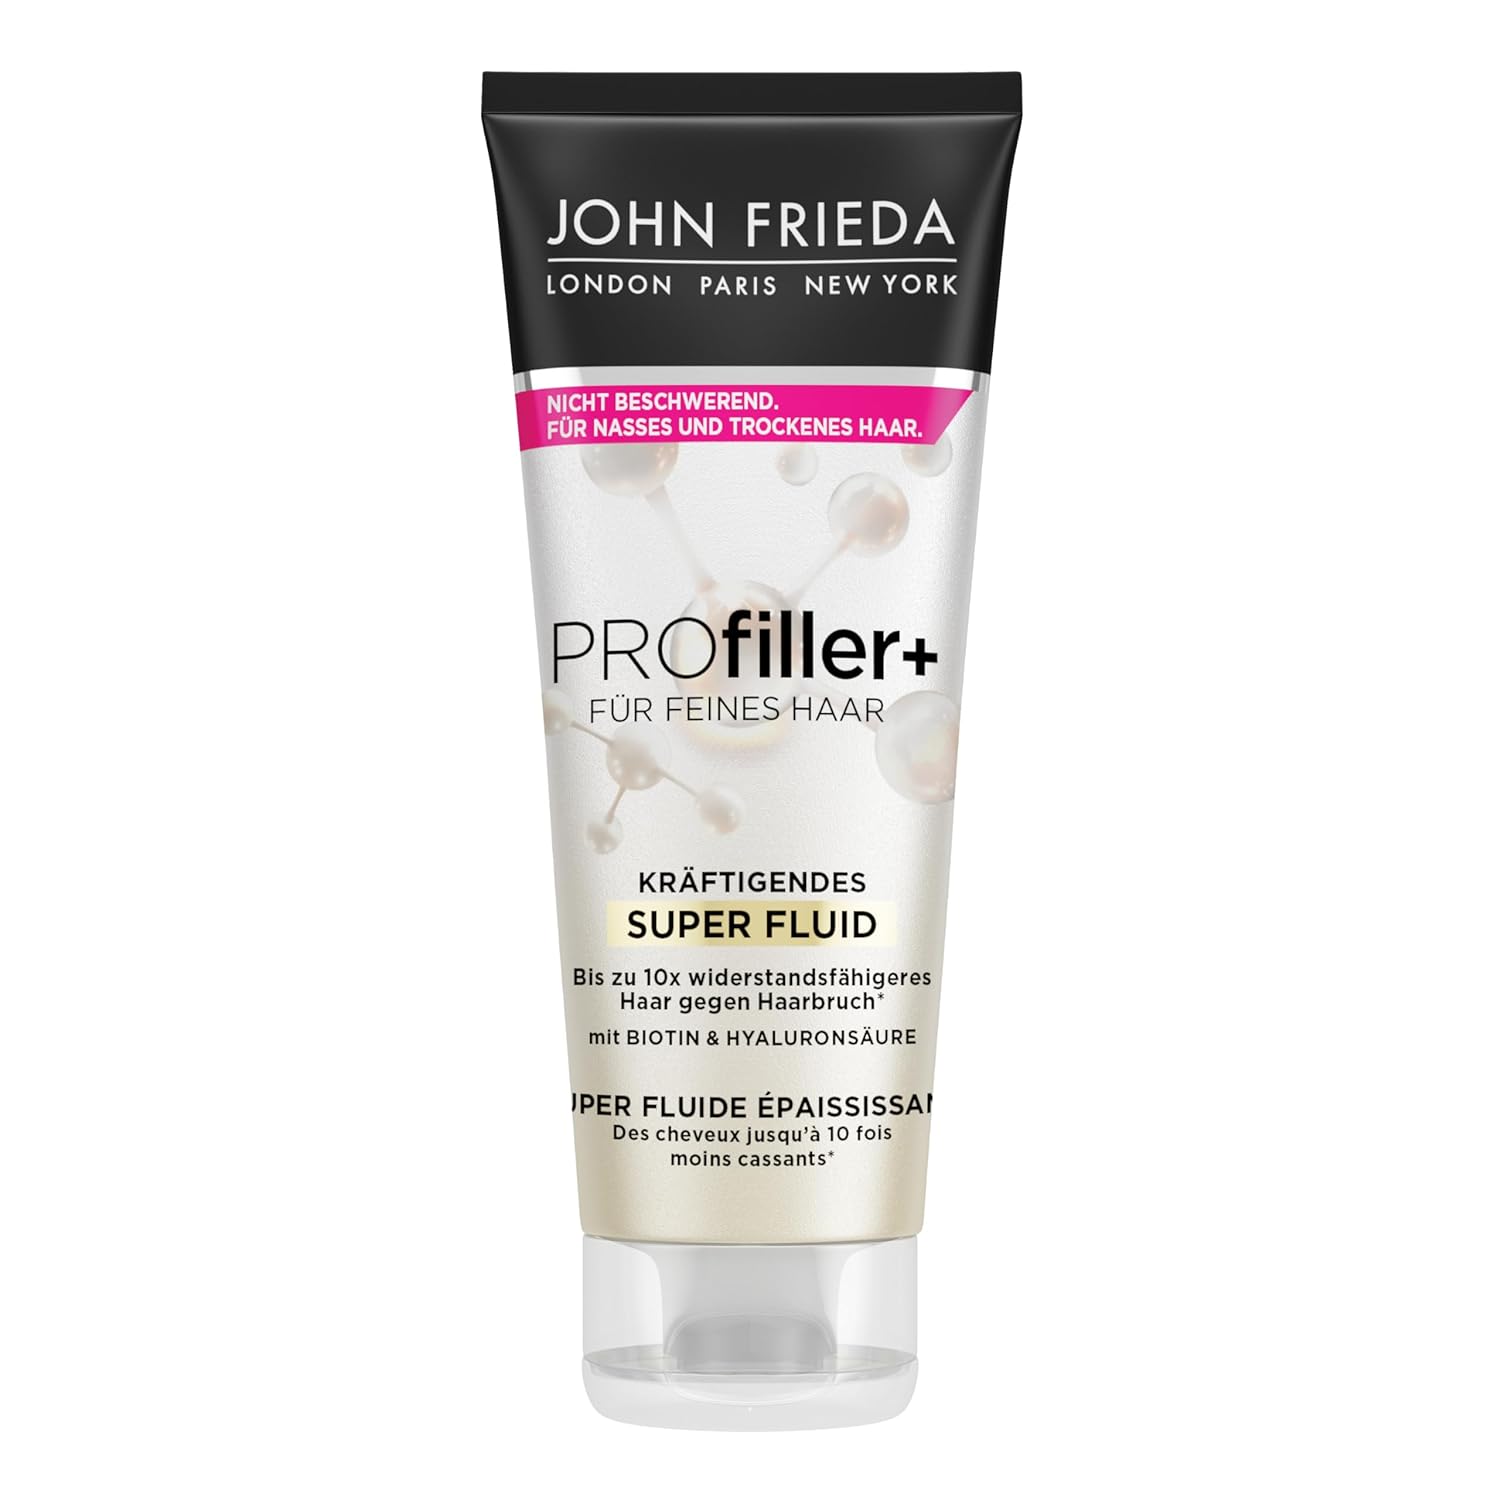 John Frieda Profiller+ Strengthening Super Fluid - Content: 100 ml - Hair Type: Fine, Thin